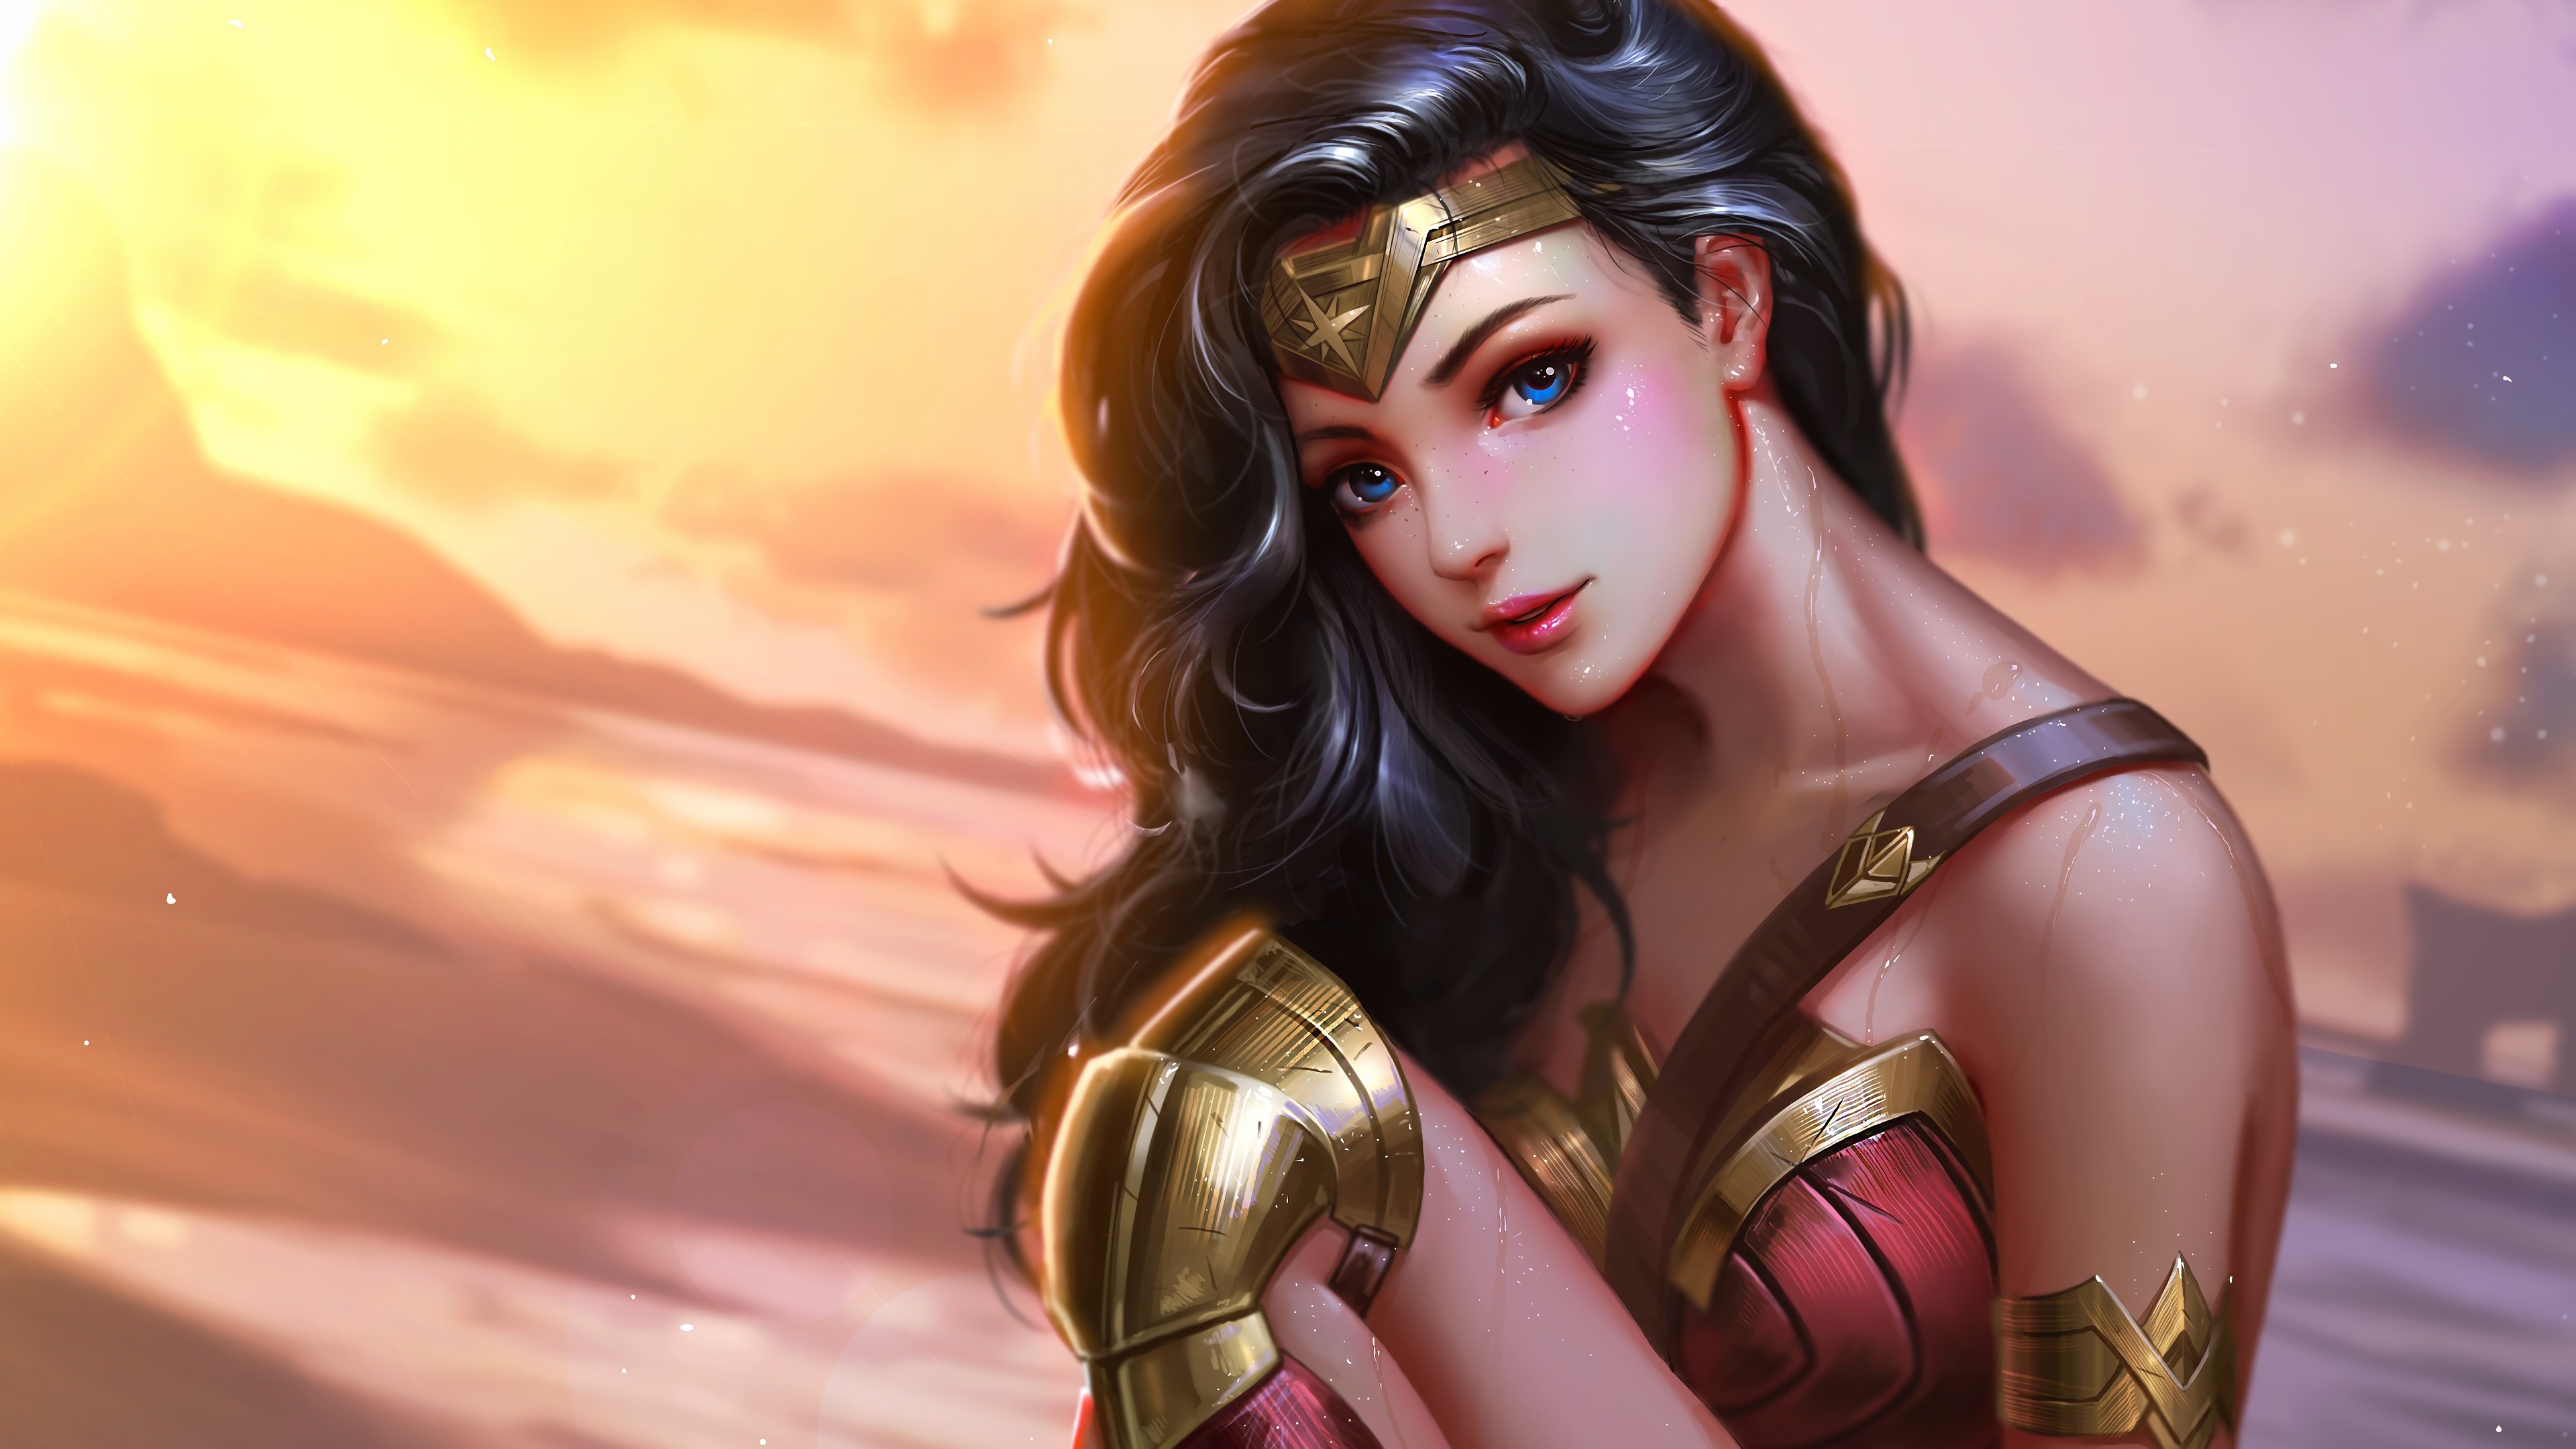 Hình nền Wonder Woman 4K: Đưa mình vào thế giới siêu anh hùng với bộ sưu tập hình nền Wonder Woman 4K đầy ấn tượng. Với độ phân giải cao và màu sắc sống động, bạn sẽ được đắm mình trong vẻ đẹp của siêu anh hùng cùng với những khả năng phi thường. Hãy trang trí màn hình của bạn với hình ảnh đầy sức mạnh này.